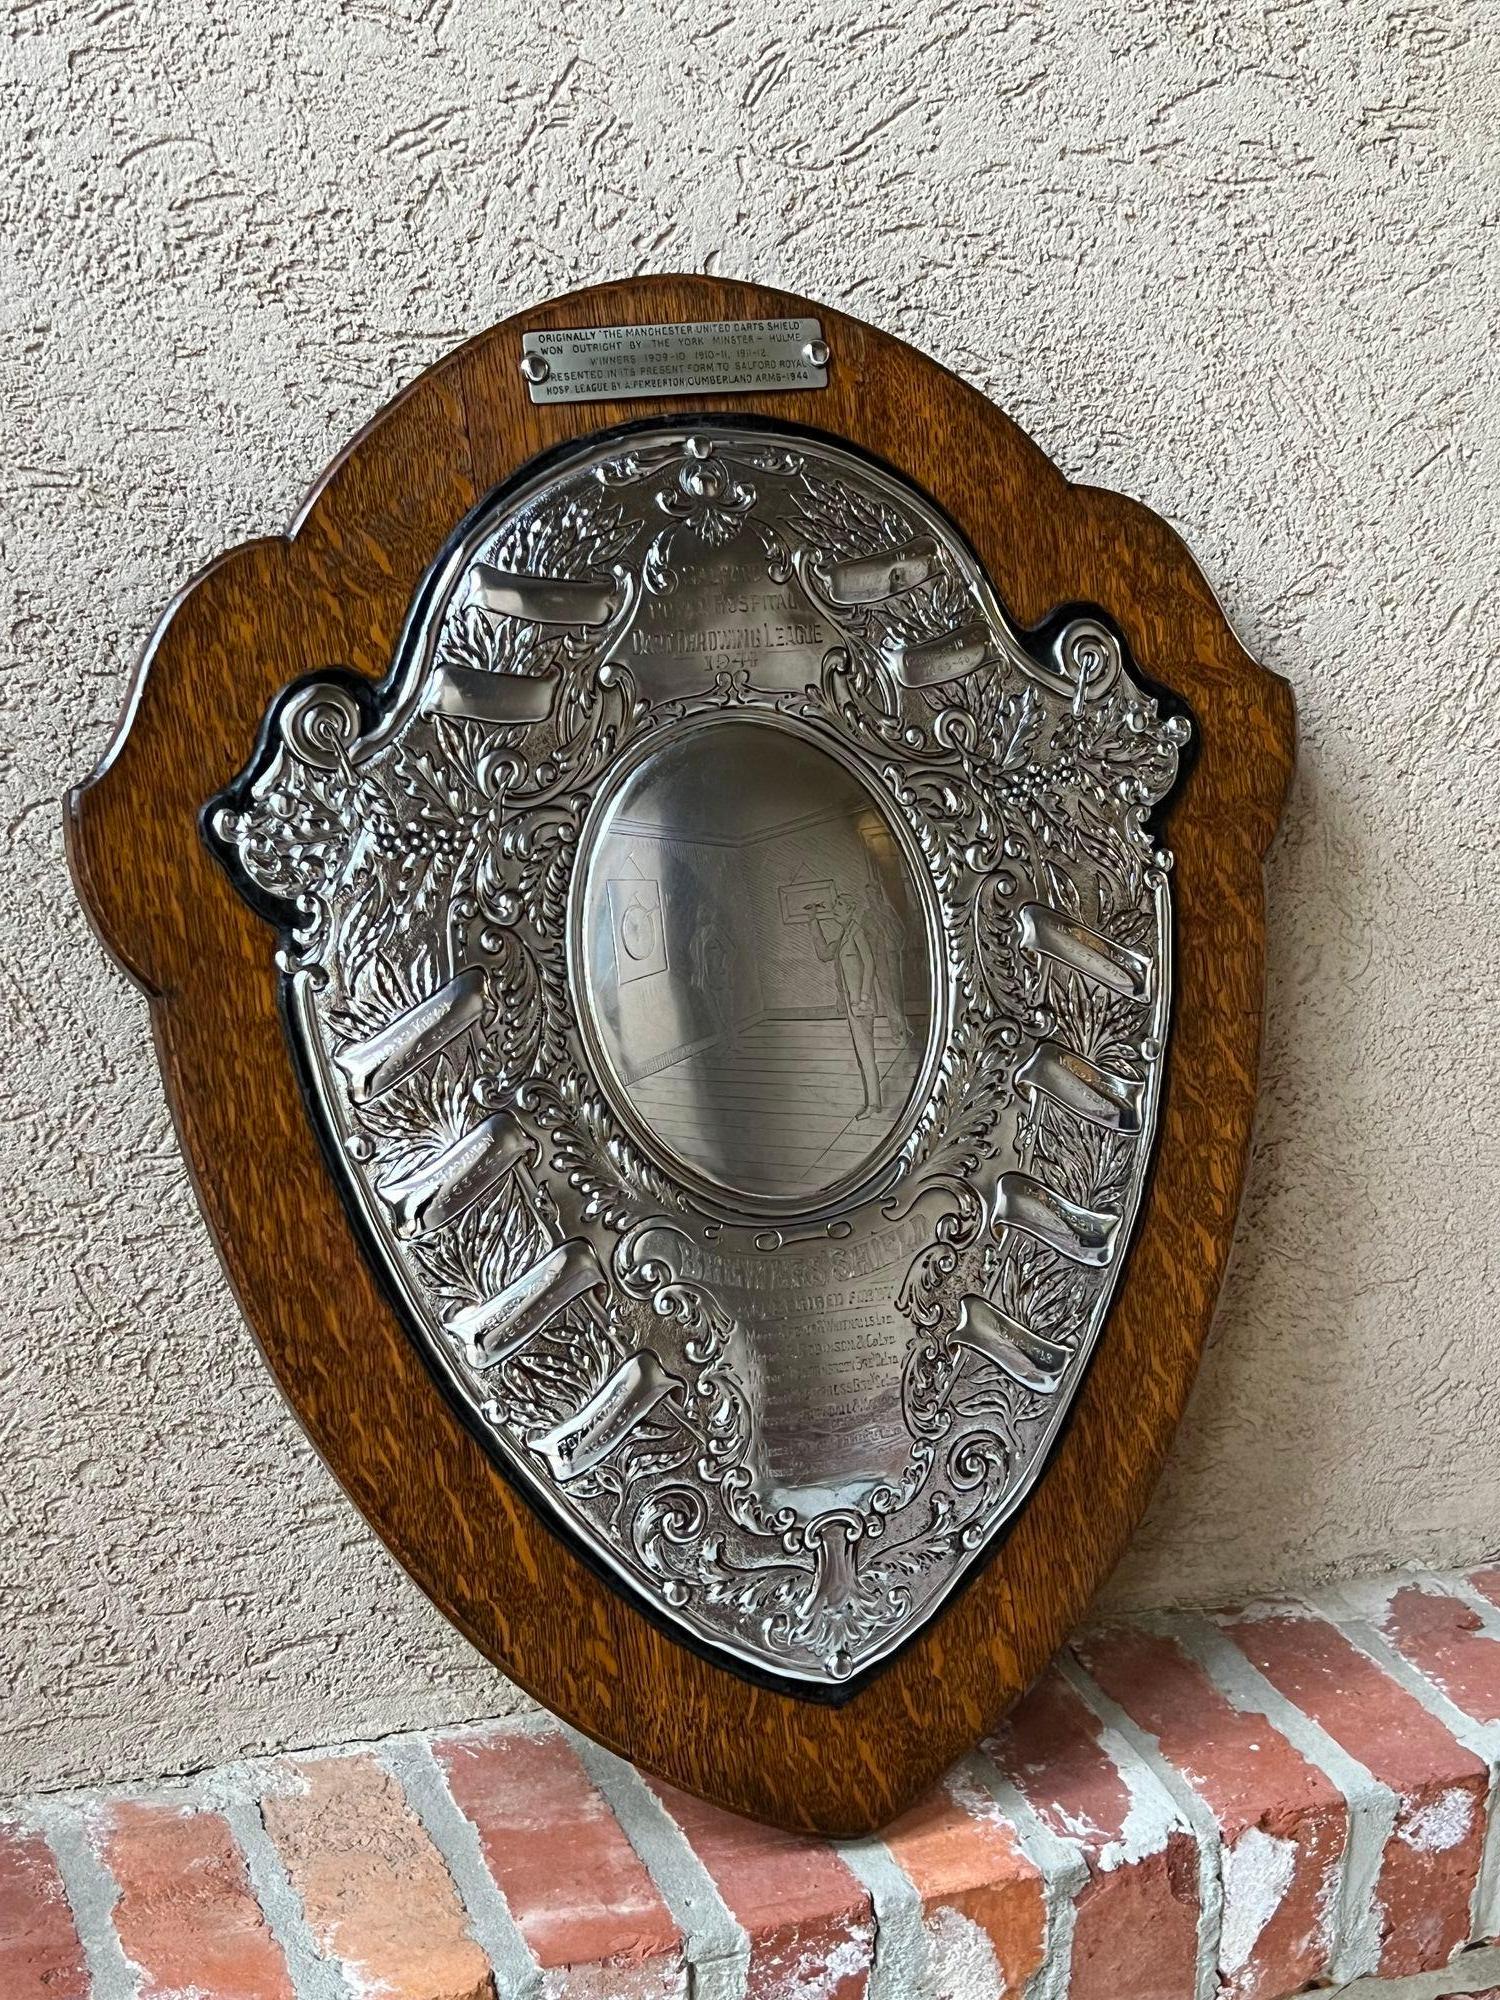 Antique English Dart Game Trophy Award Shield Oak Plaque Silver Plate c1909.
En provenance directe d'Angleterre, nous disposons de plusieurs de ces trophées anglais uniques en leur genre qui regorgent de provenance, et oh 